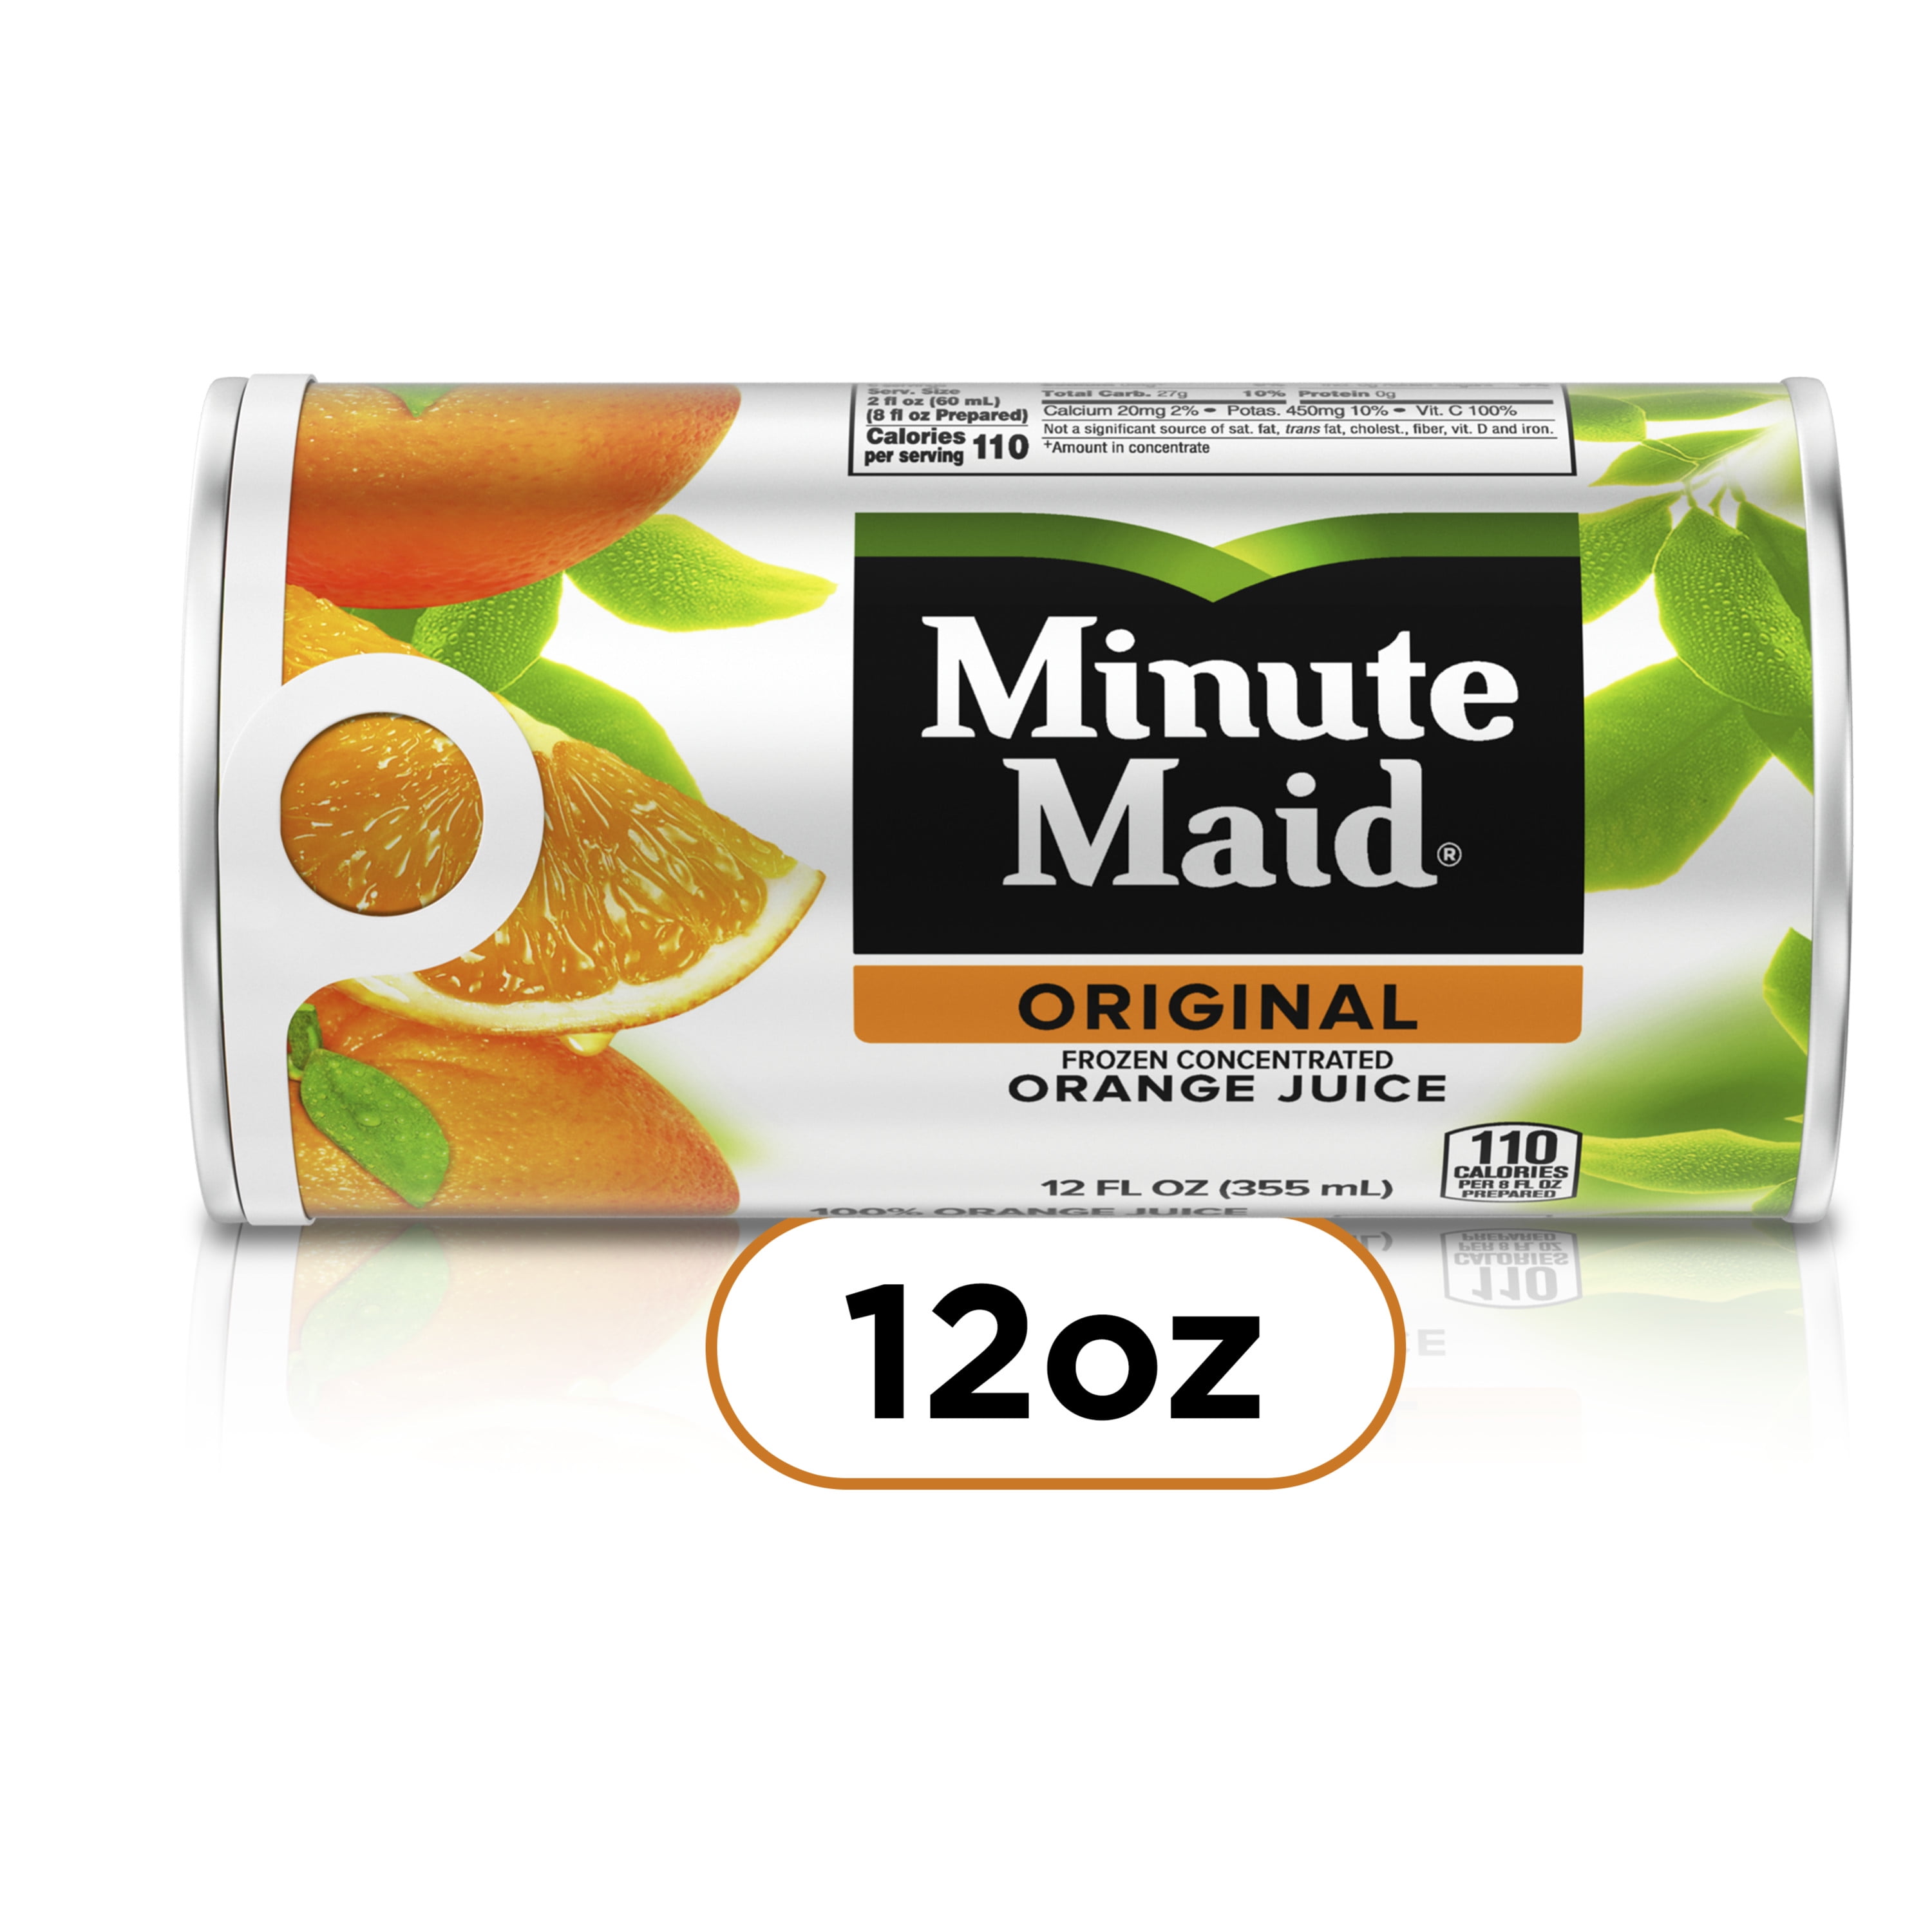 Orange Juice Multipack, 8 fl oz bottles at Whole Foods Market